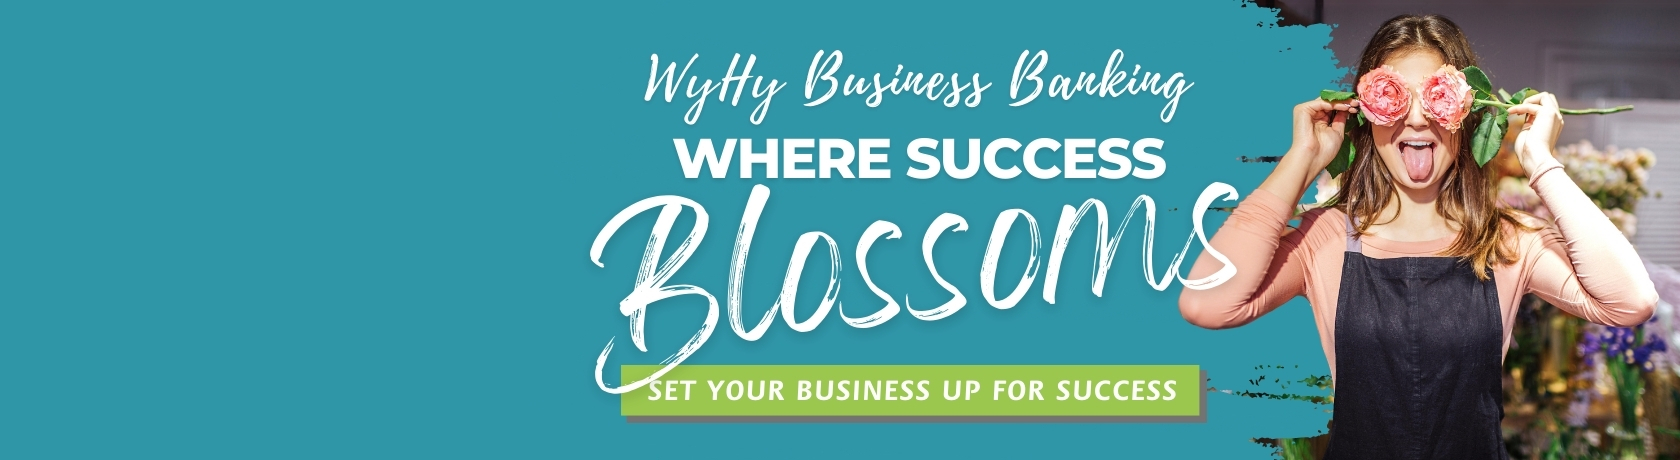 Blossom-Business.aspx